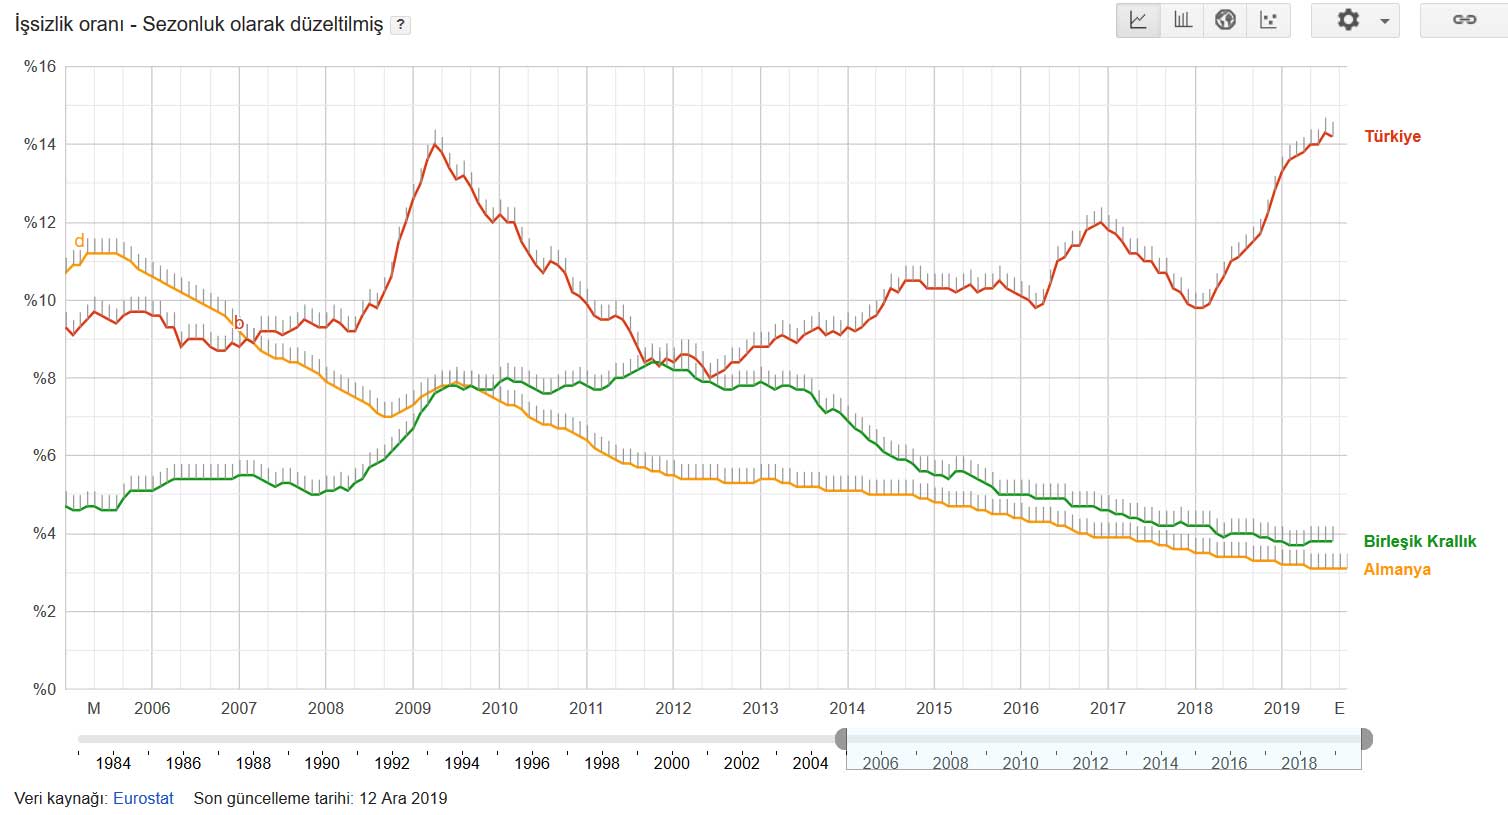 2005-2019 Yılları Arası Almanya, İngiltere ve Türkiye İşsizlik Oranları